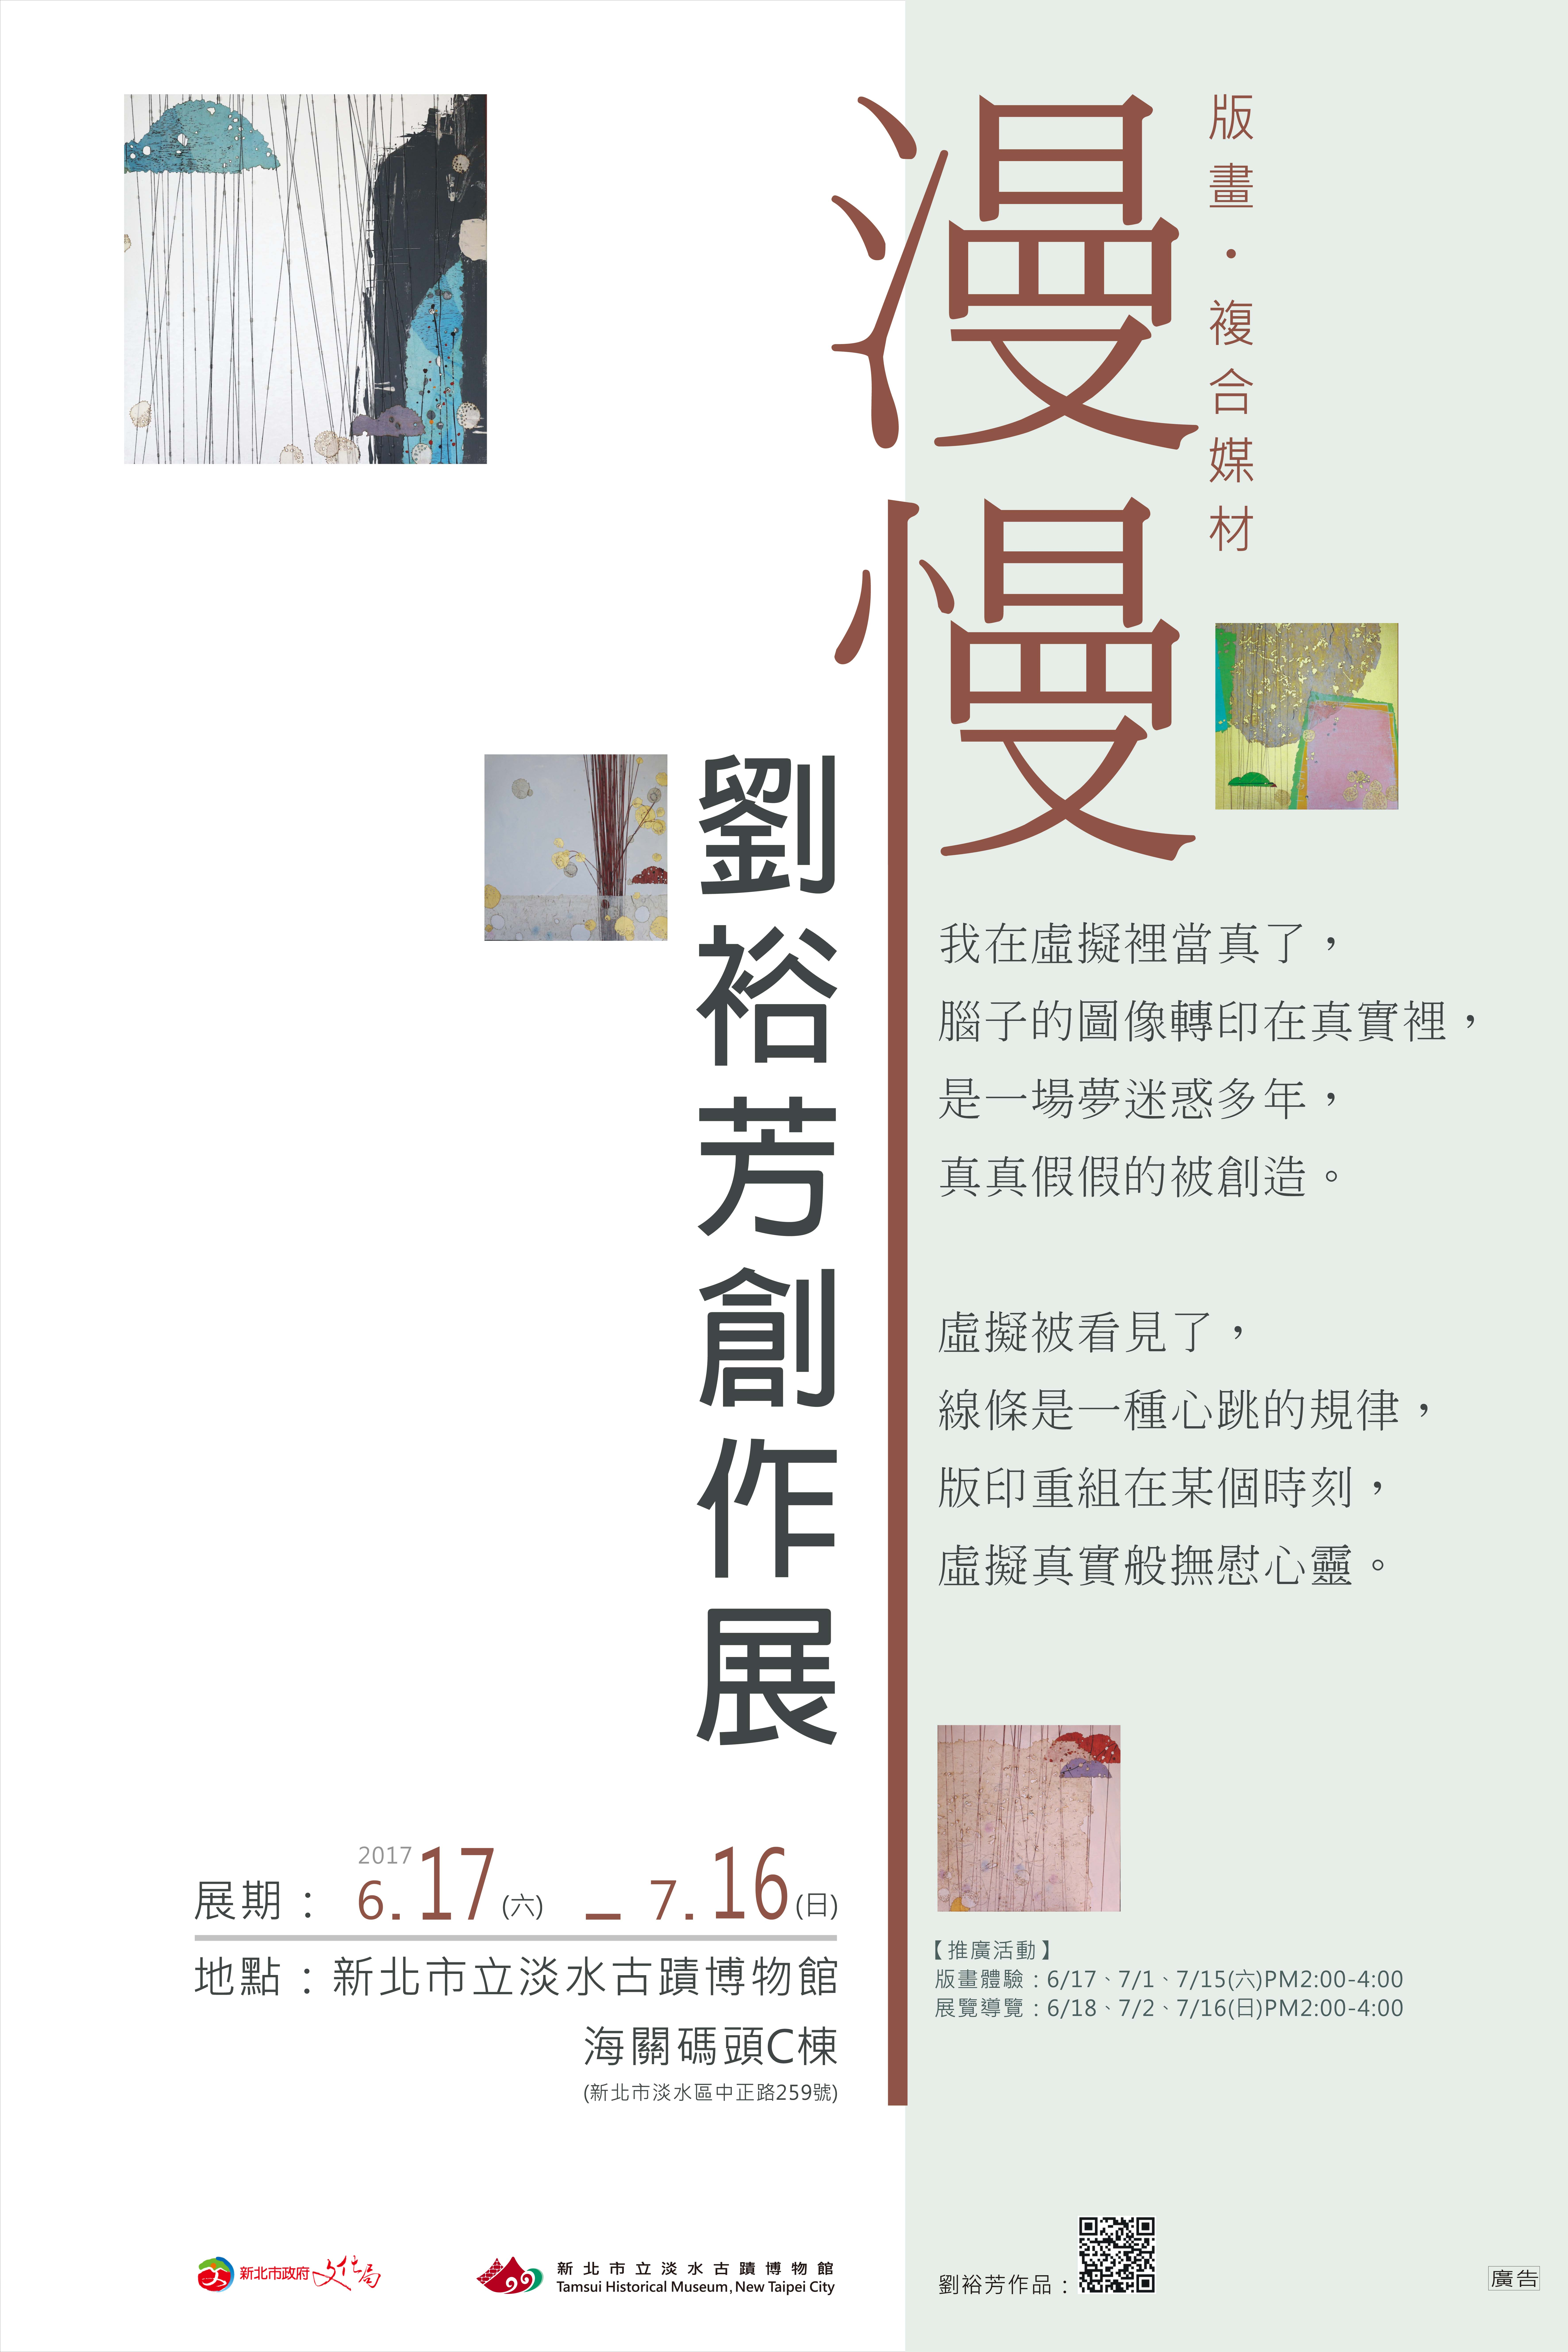 「漫慢─劉裕芳創作展」展覽海報。